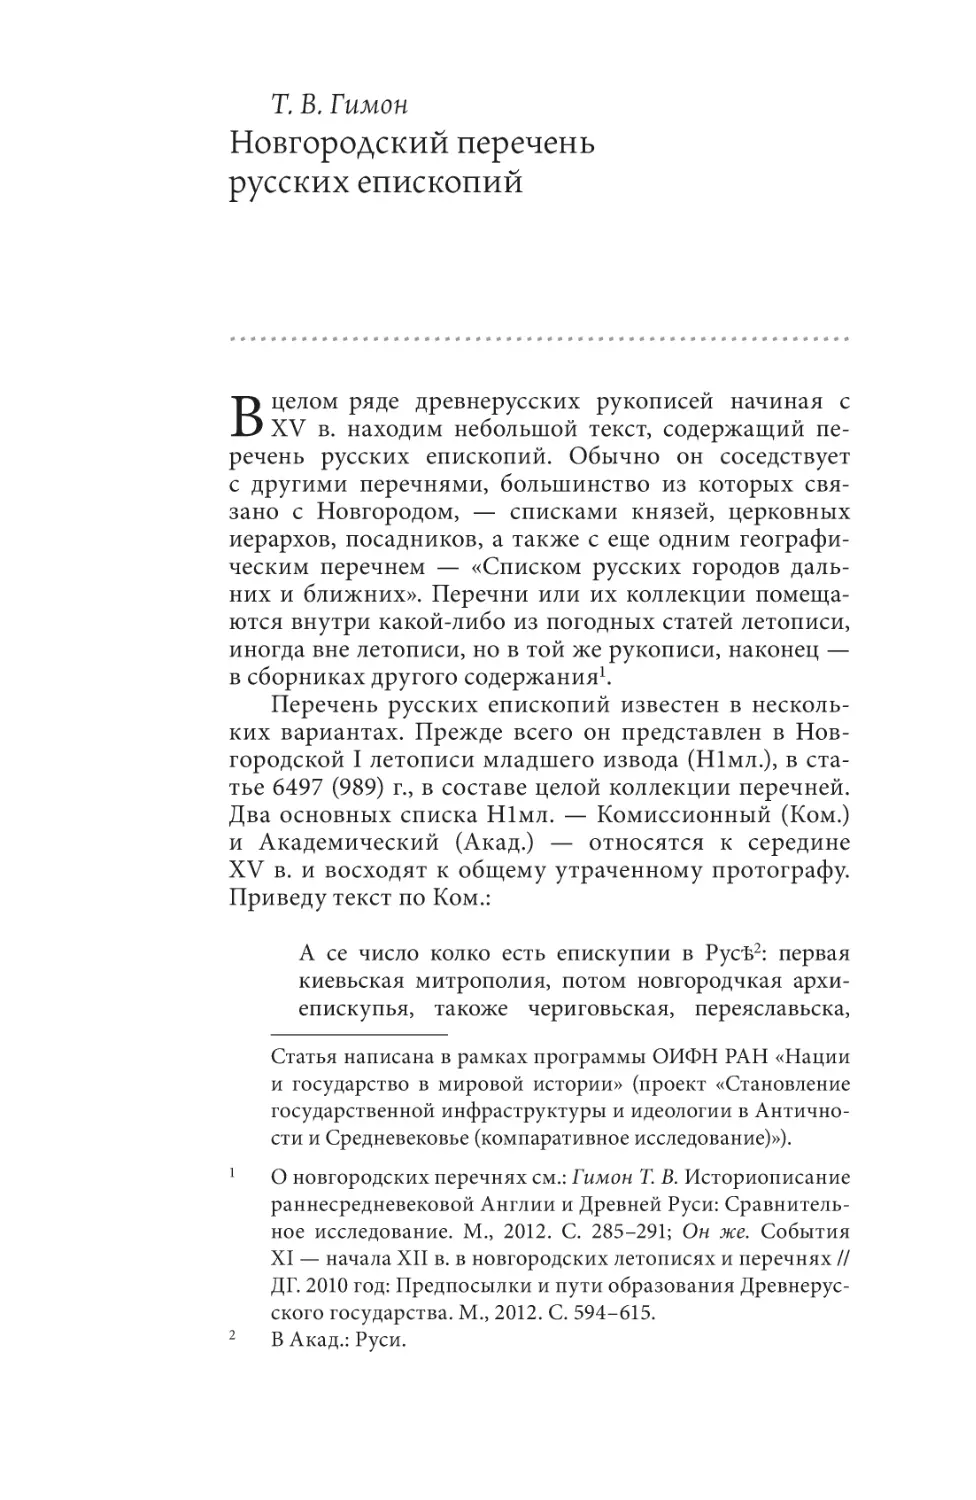 Гимон Т. В. Новгородский перечень русских епископий